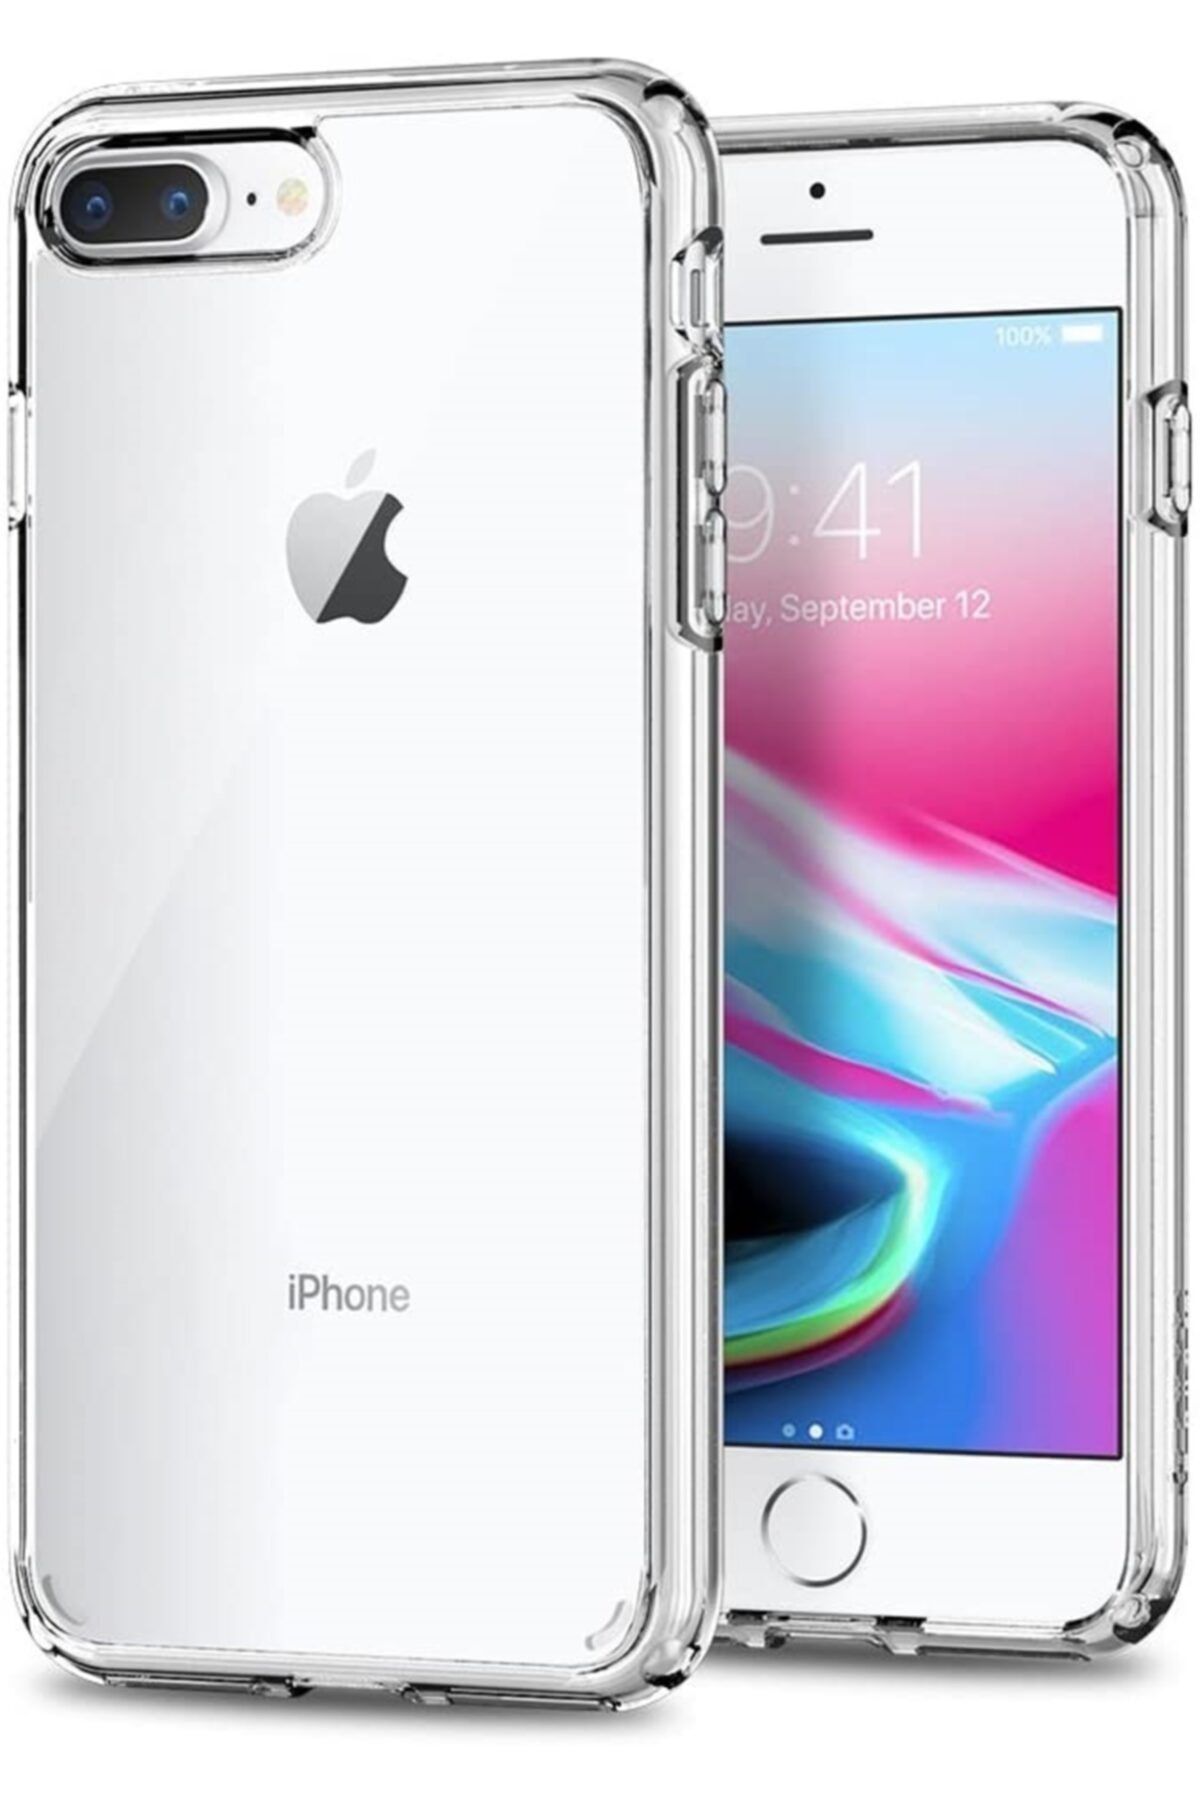 Mobilteam Apple Iphone 7 Plus Kılıf Şeffaf Süper Silikon Kapak